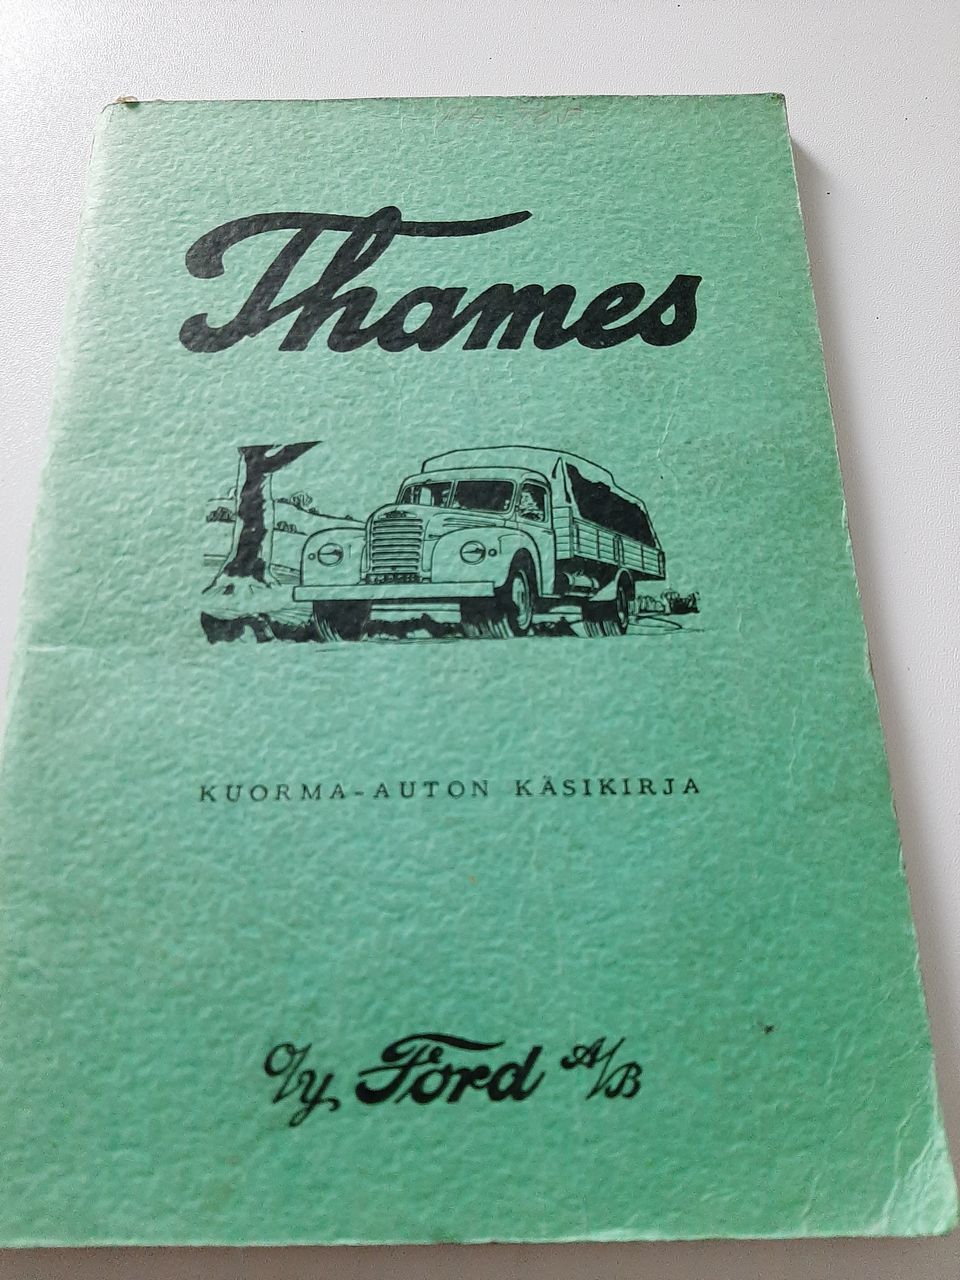 Fordson Thames kuorma-auton käsikirja